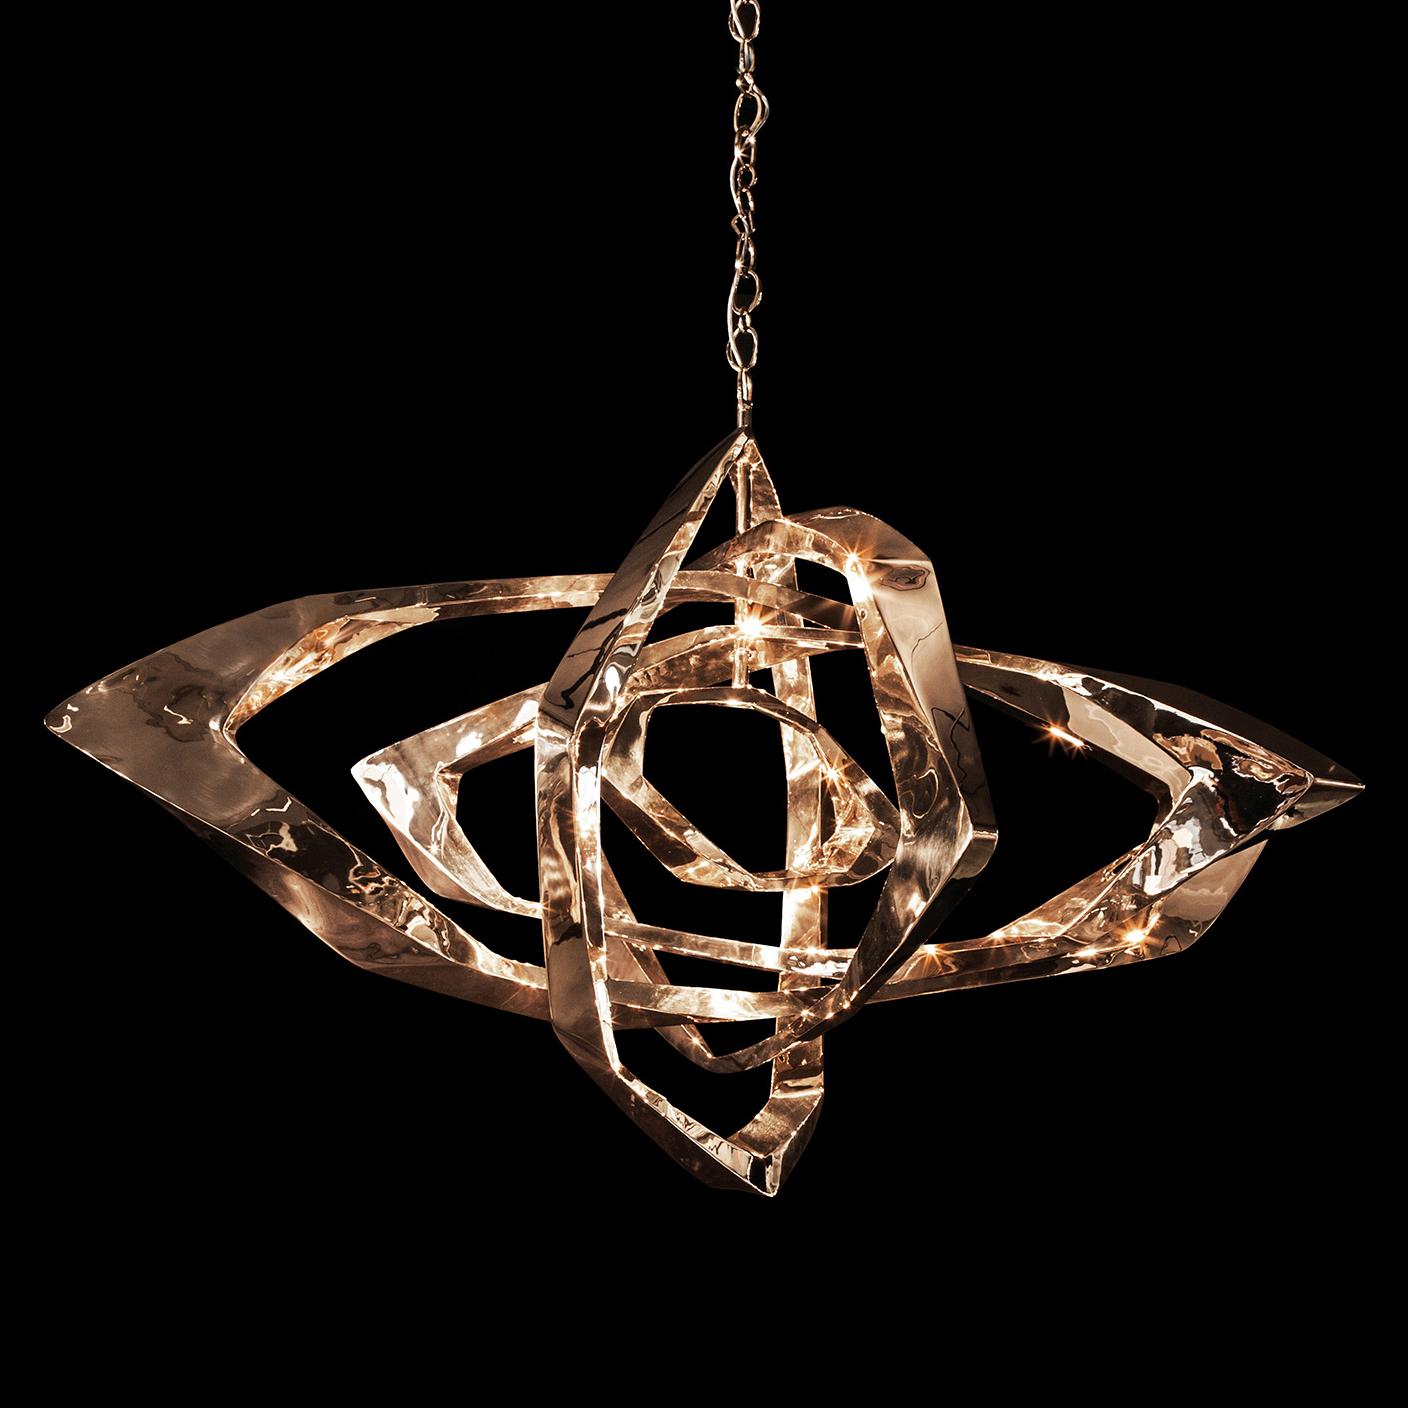 Der von Barlas Baylar entworfene La Cage-Kronleuchter hat einen einzigartigen zeitgenössischen Stil, der in jeder Umgebung einen Akzent setzt.  Der La Cage wird durch LED-Lampen erzeugt, die in den Bronzerahmen eingelassen sind.  Das daraus